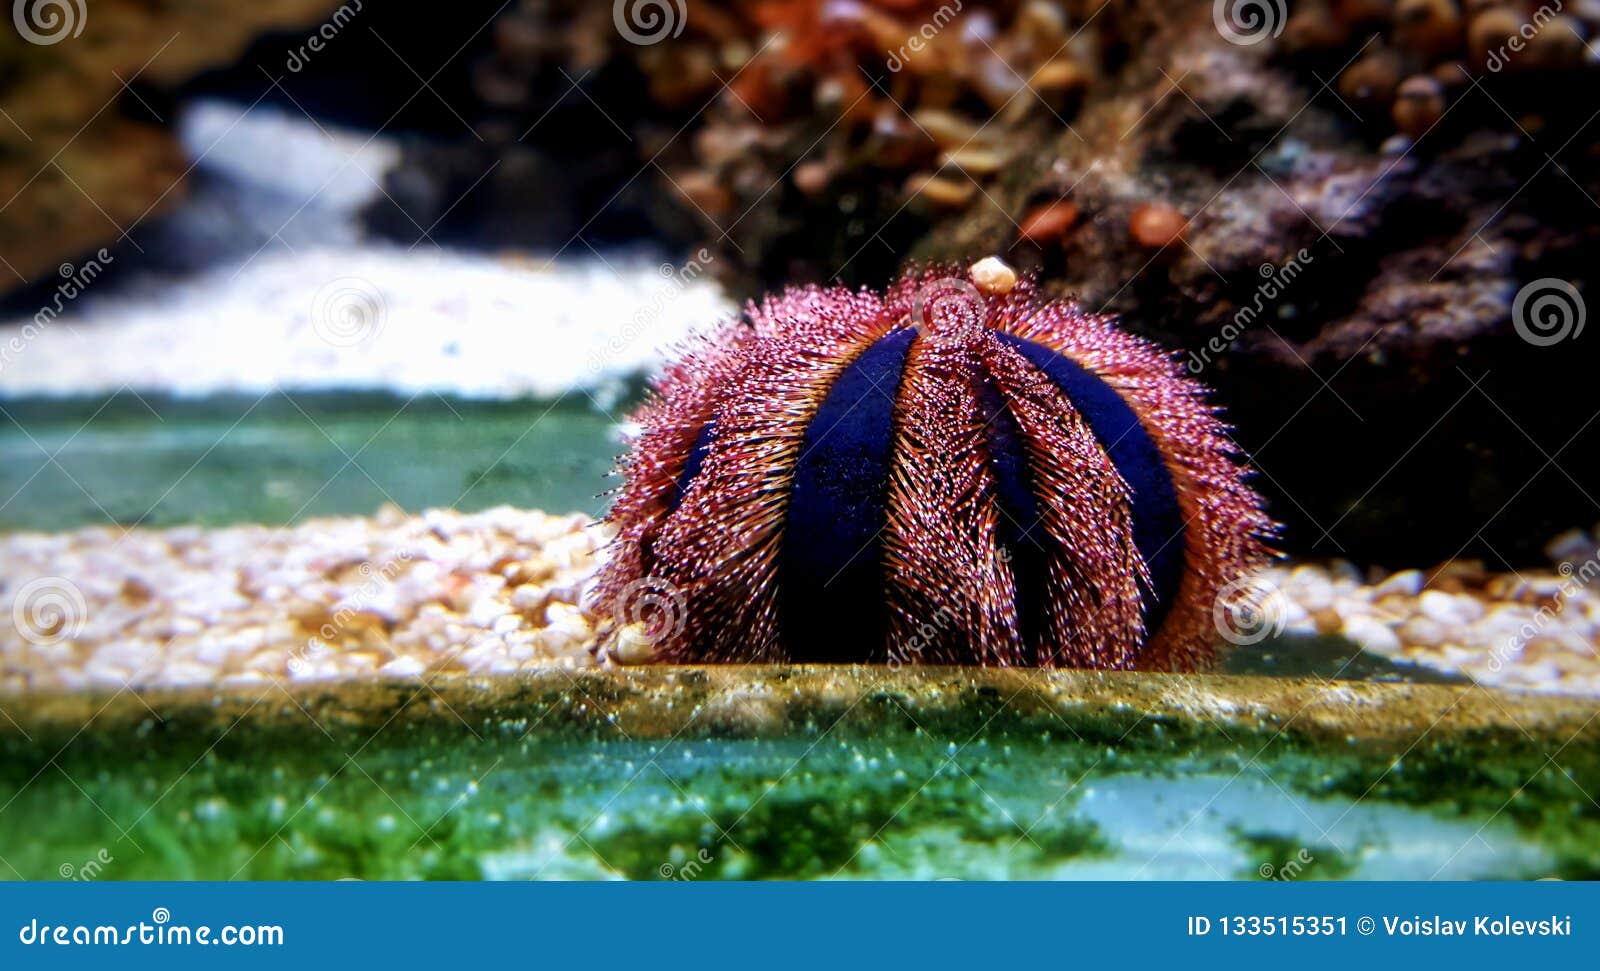 Blue Tuxedo Urchin Mespilia Globulus Stock Image - Image of animal: 133515351